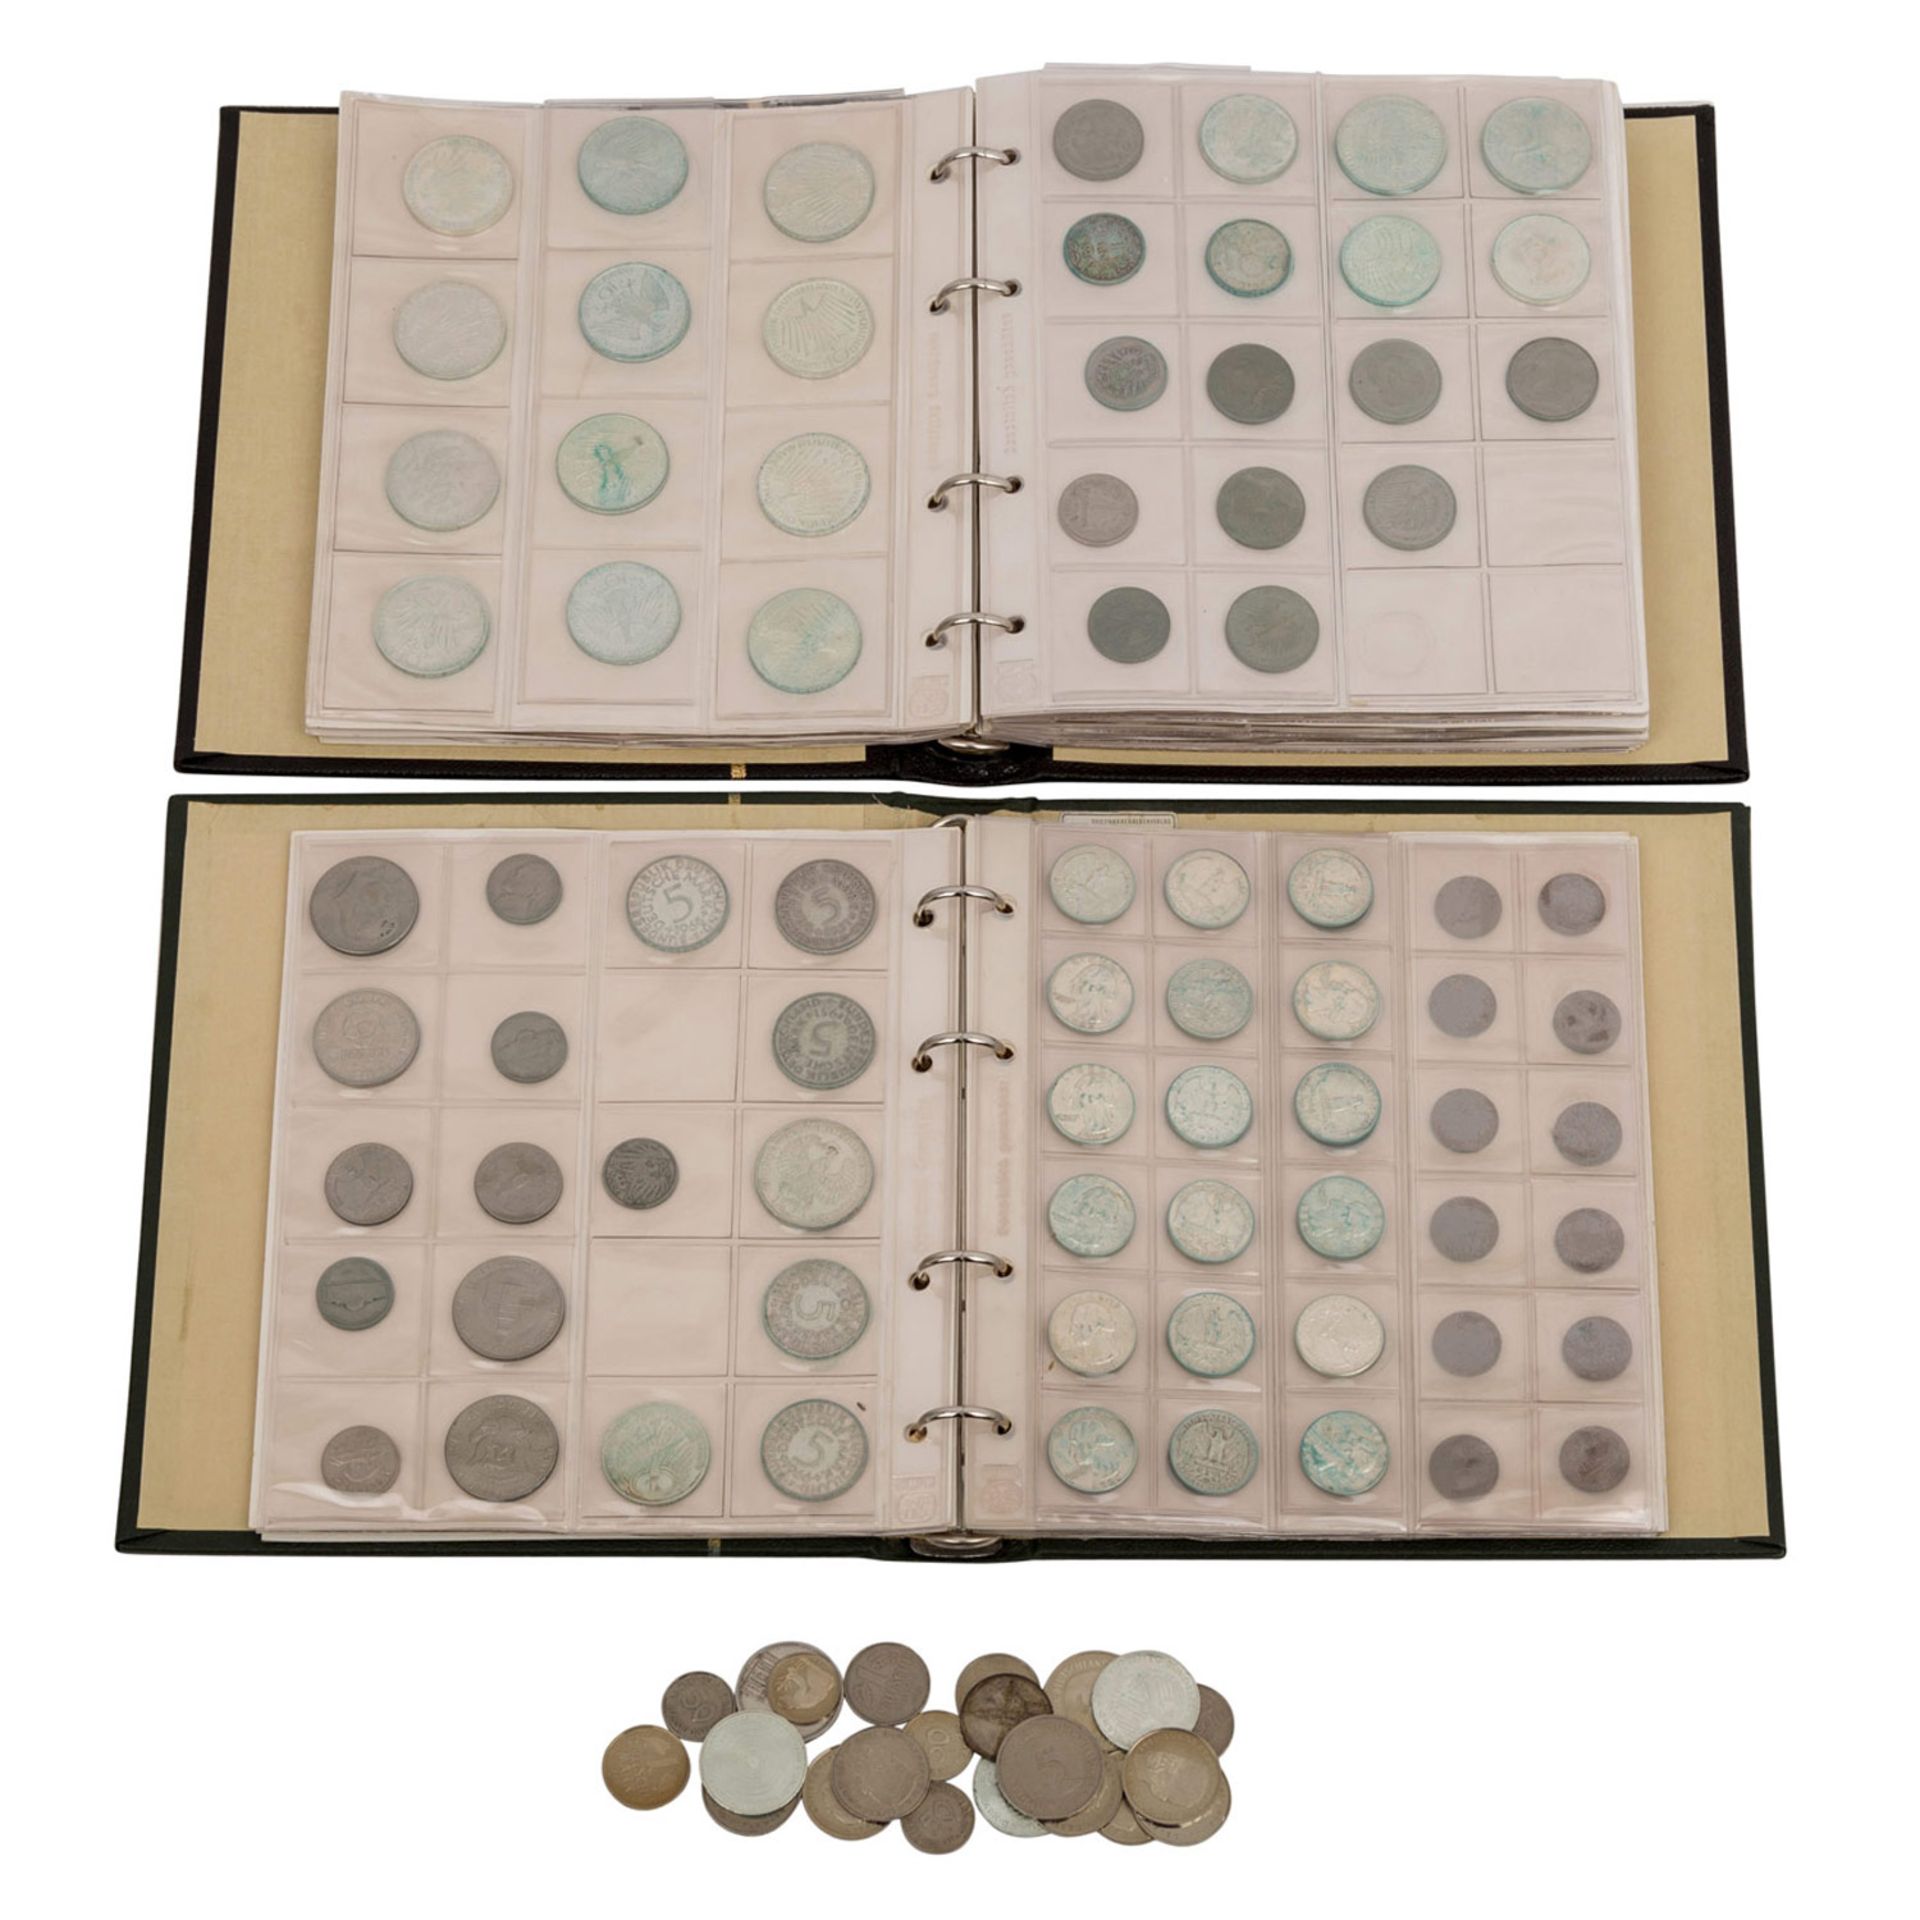 2 Alben und lose Münzen, überwiegendBRD mit 10 DM, 5 DM, auch IIIl. Reich 21 x 5 Reichsmark, etwas